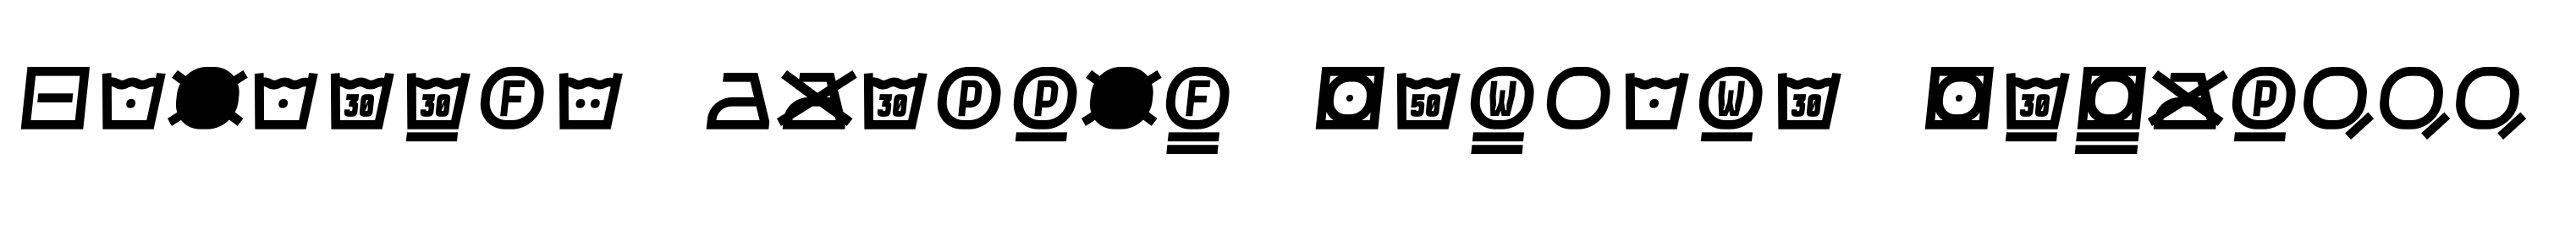 Monostep Washing Symbols Straight Regular Italic